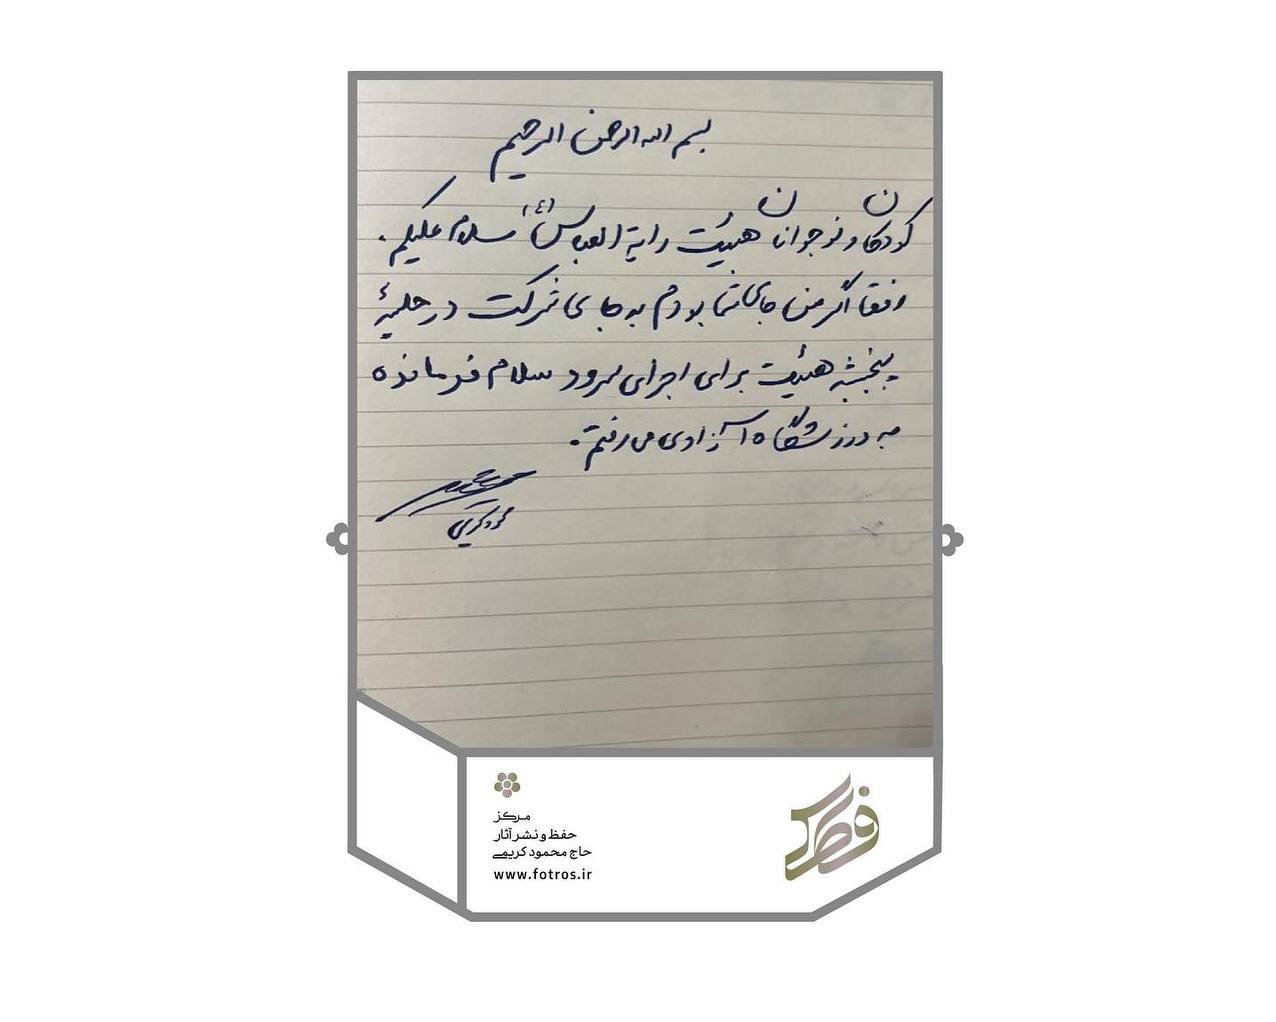 دعوت محمود کریمی برای شرکت در اجتماع «سلام فرمانده»